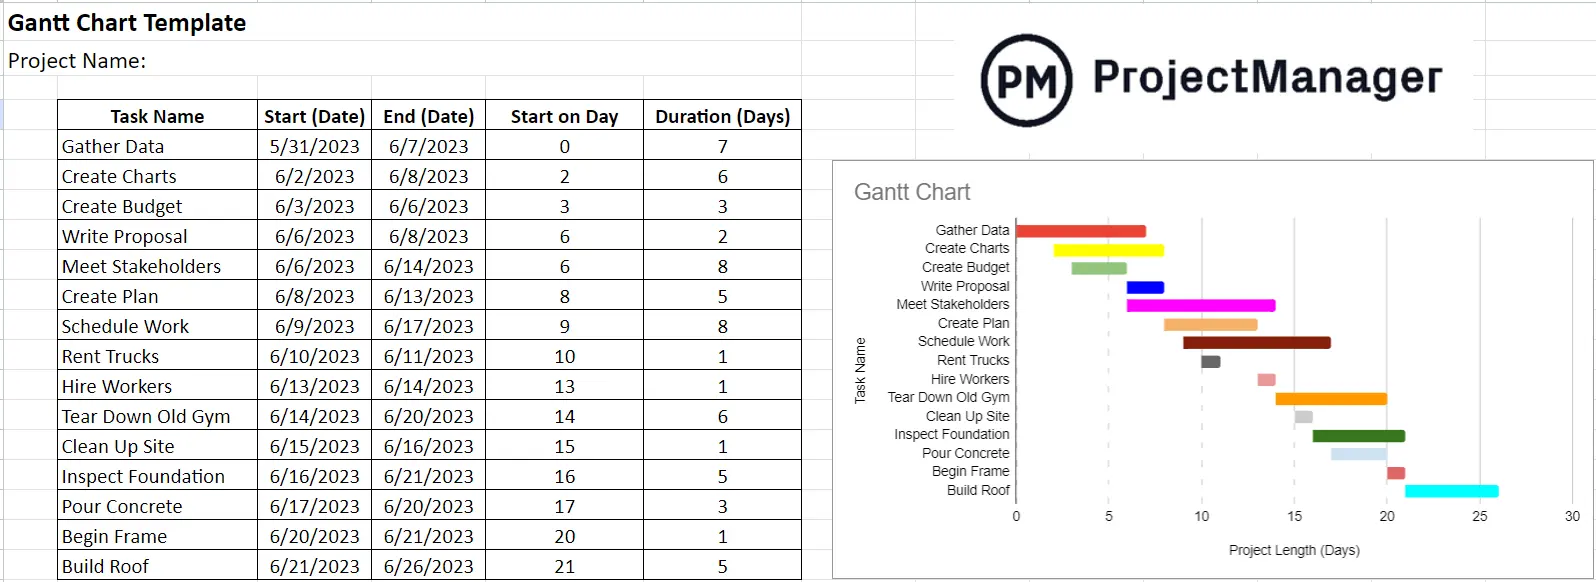 Gantt chart template Google Sheets